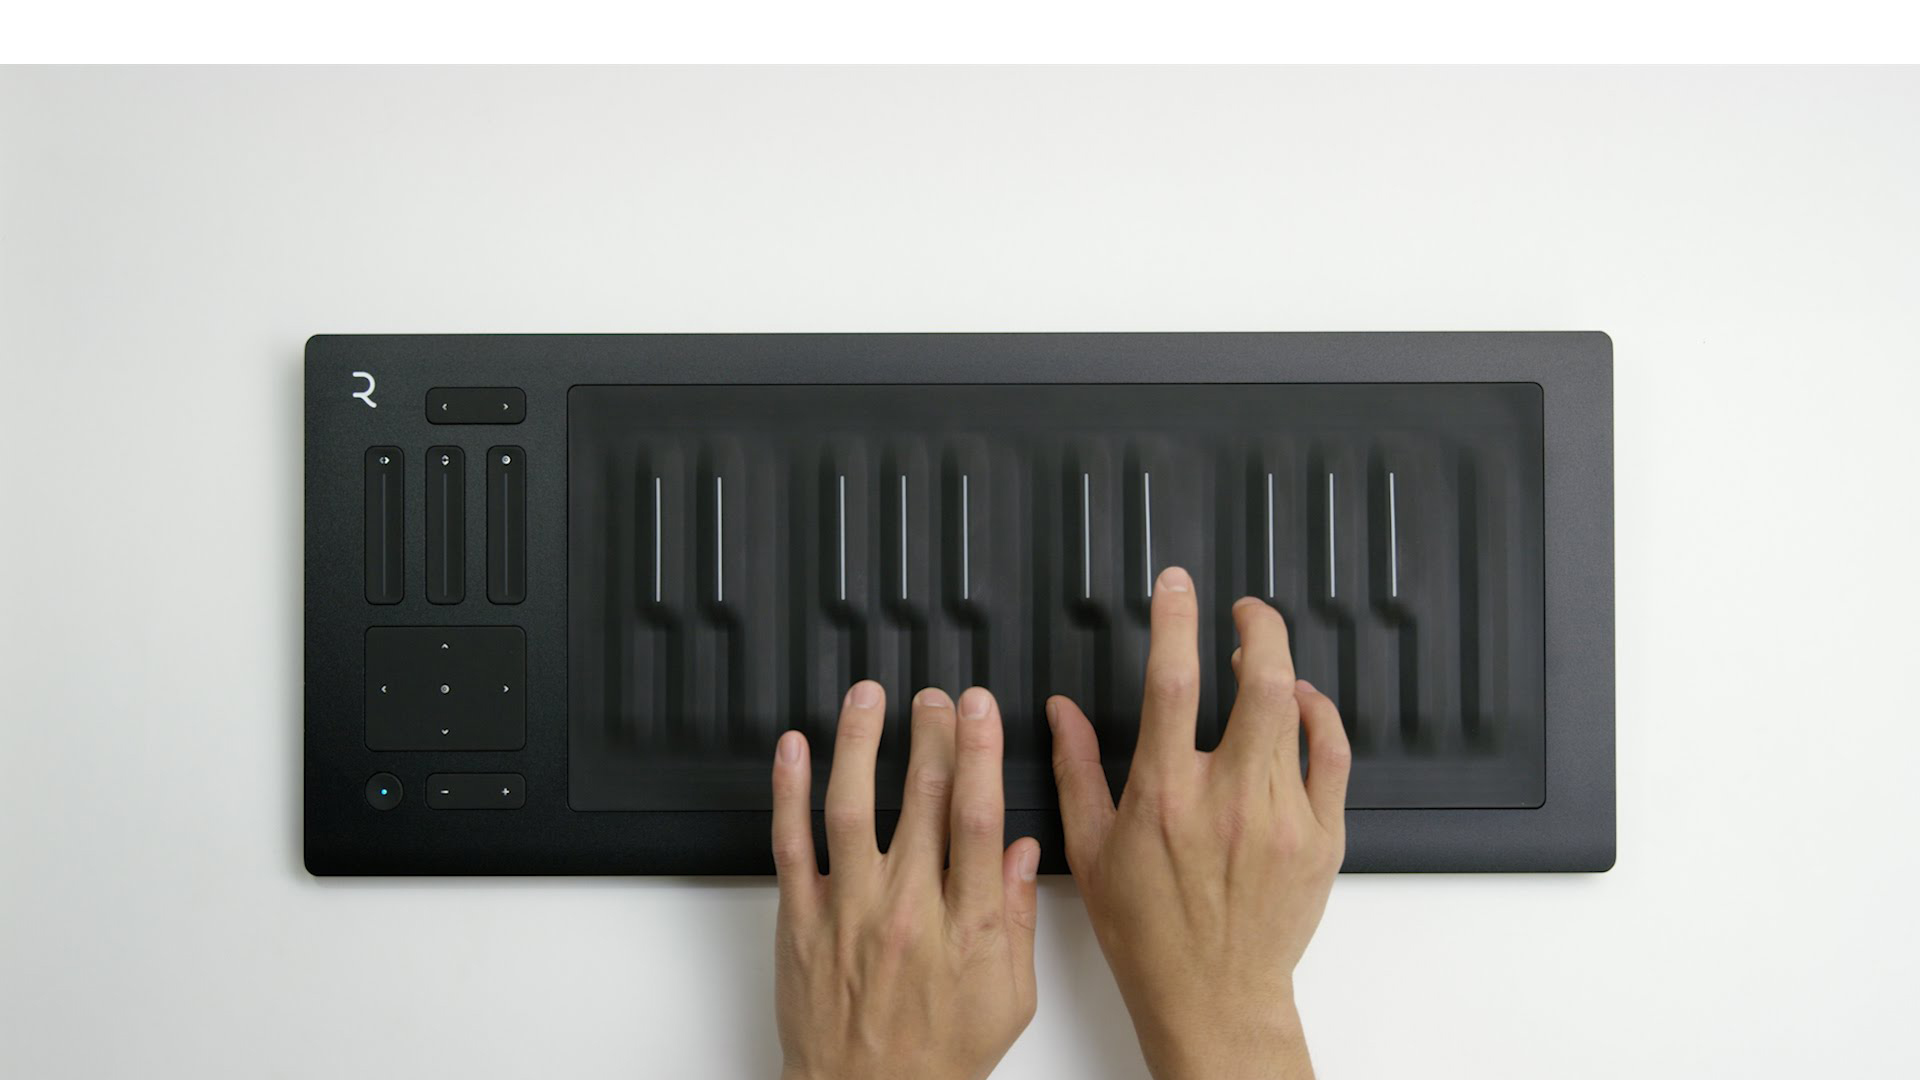 Si producir música es tu carrera el teclado Seabord RISE 49 de Roli te encantará, no sólo es táctil e innovador, también funciona con Bluetooth